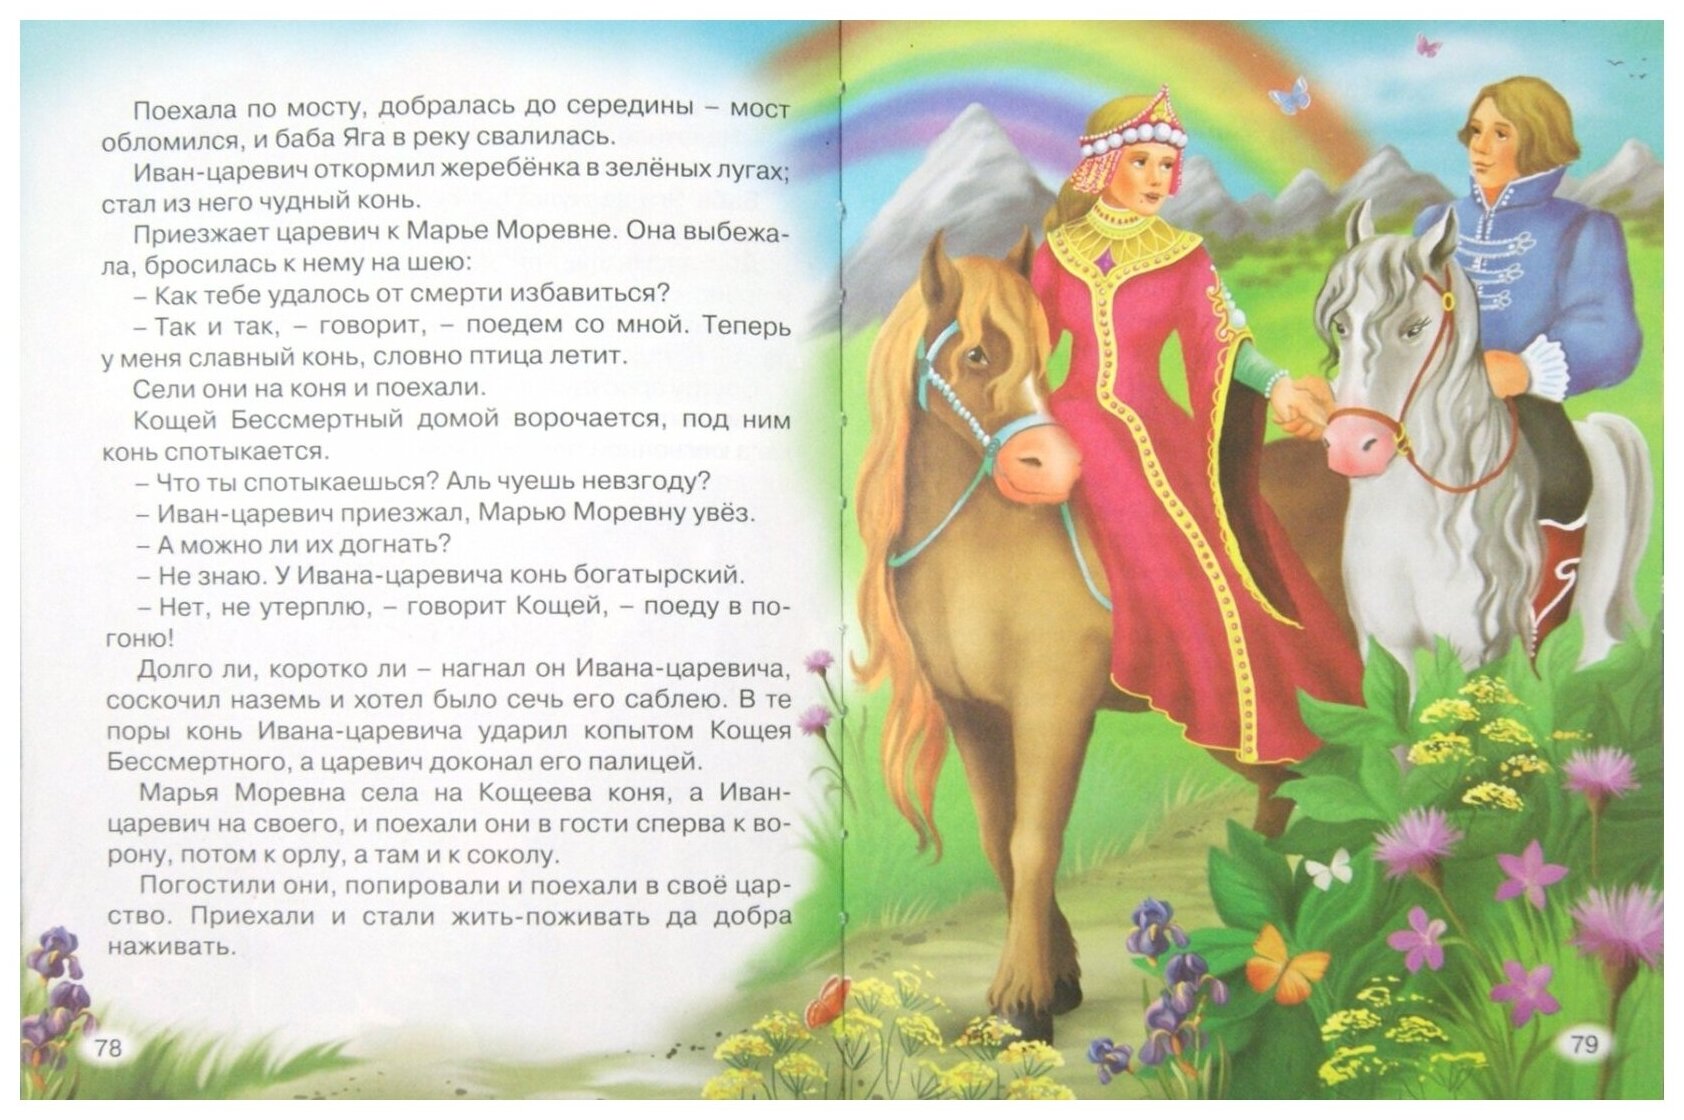 Русские народные сказки (Афанасьев Александр Николаевич) - фото №3